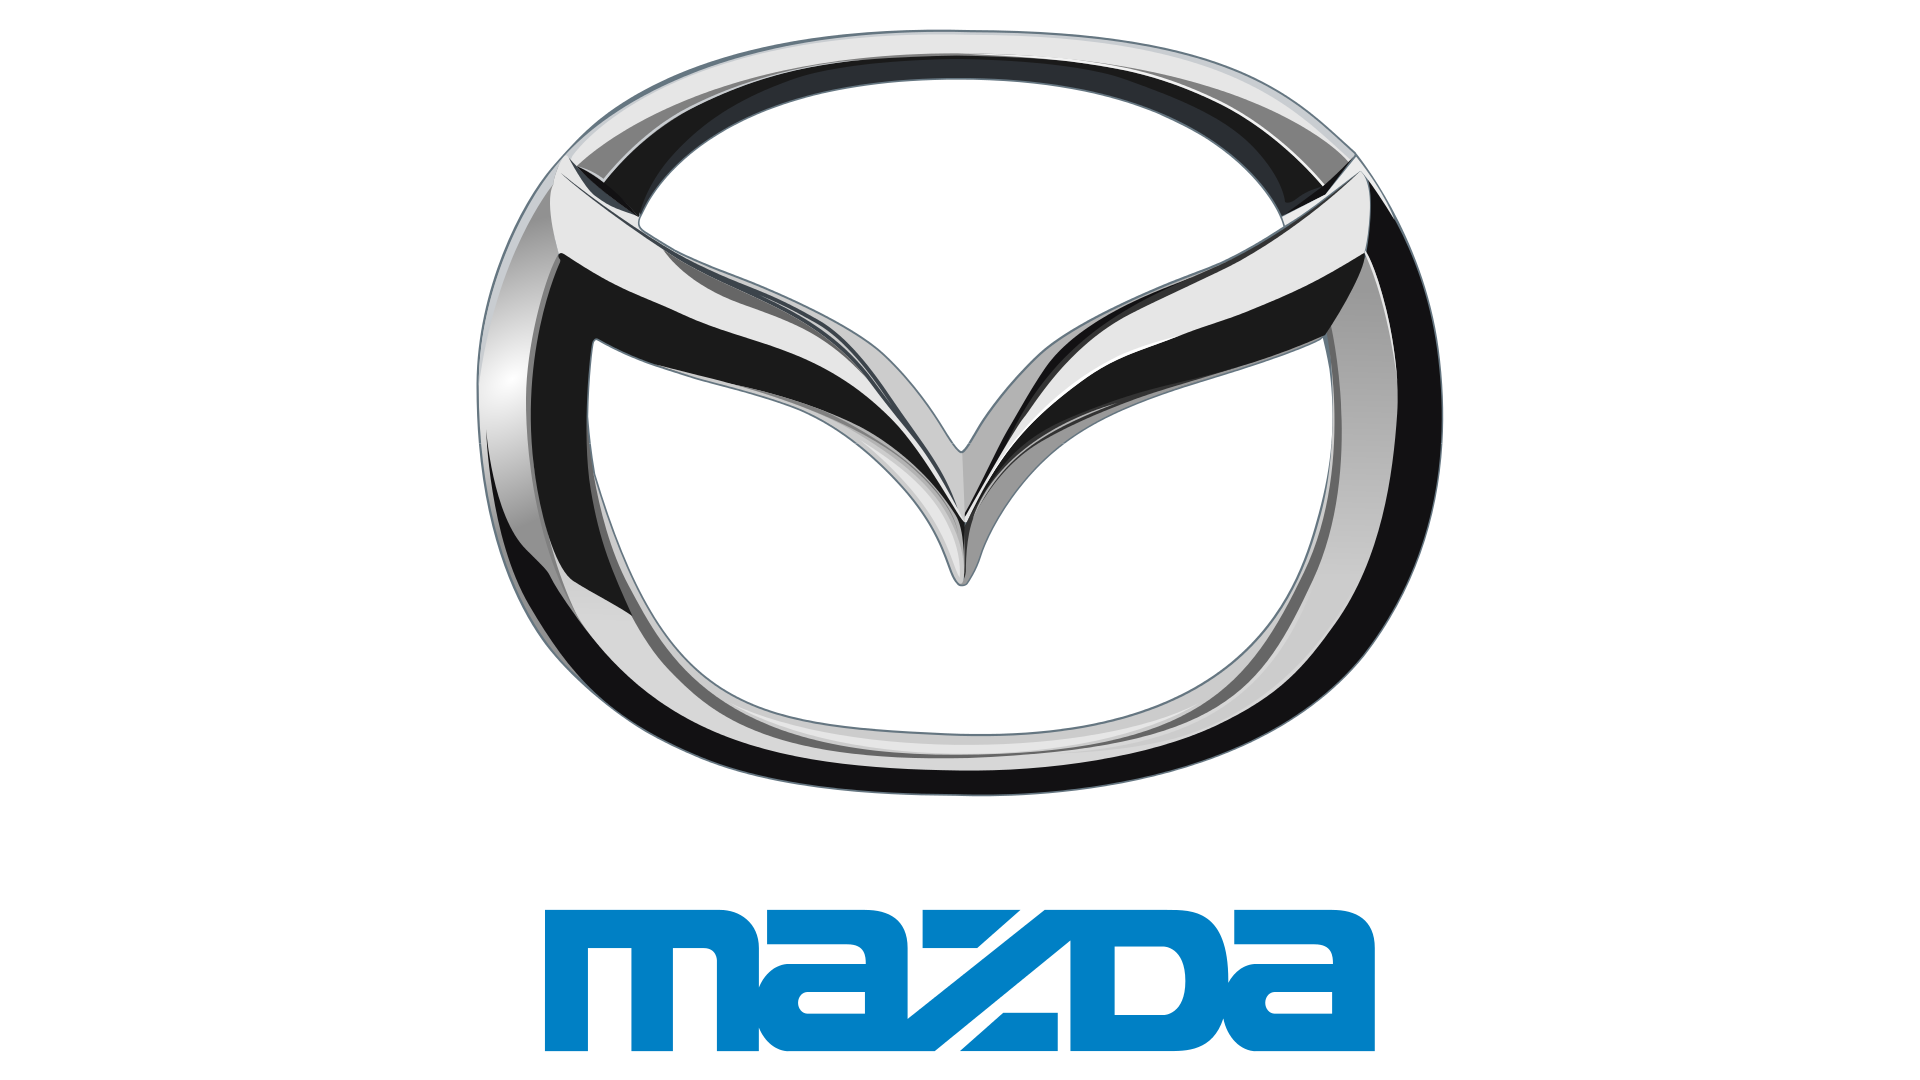 Thương hiệu Mazda luôn được biết đến với tính năng xuất sắc và kiểu dáng độc đáo. Hãy khám phá bộ sưu tập hình ảnh đẹp về logo của Mazda trong định dạng PNG và cảm nhận sự tinh tế của thương hiệu này.